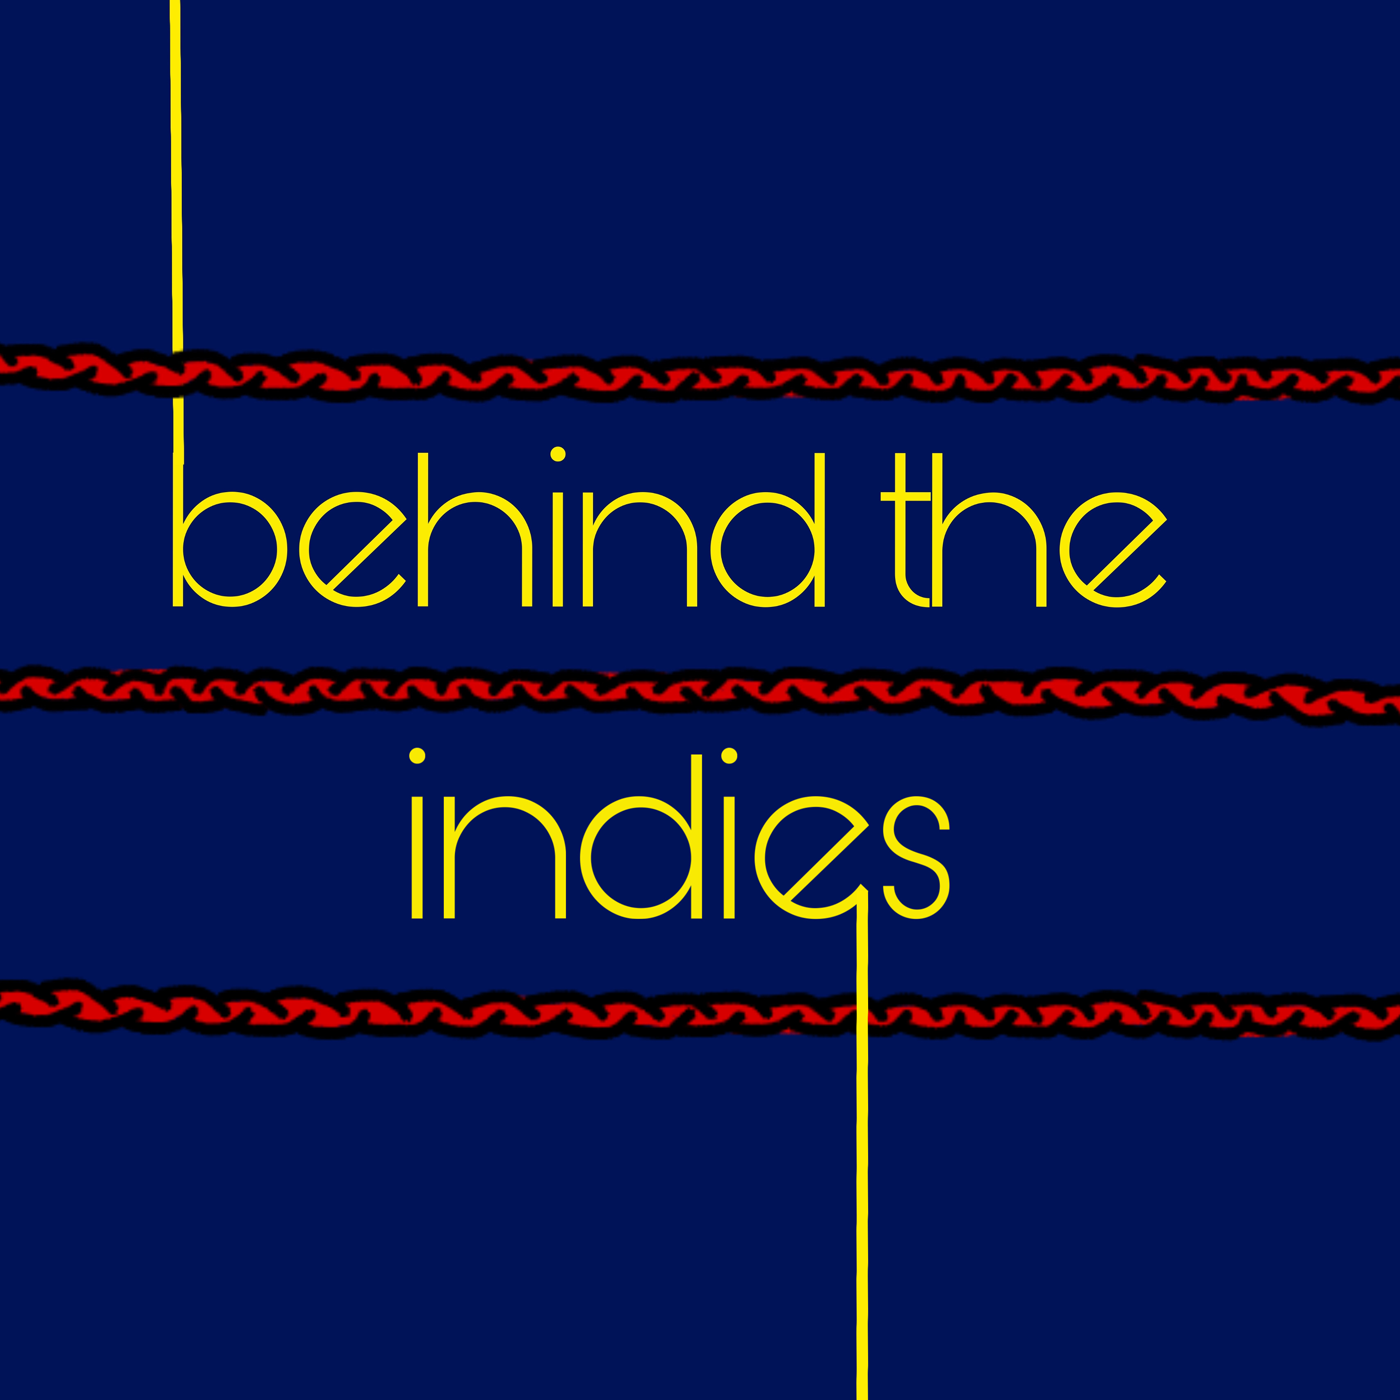 Behind the Indies